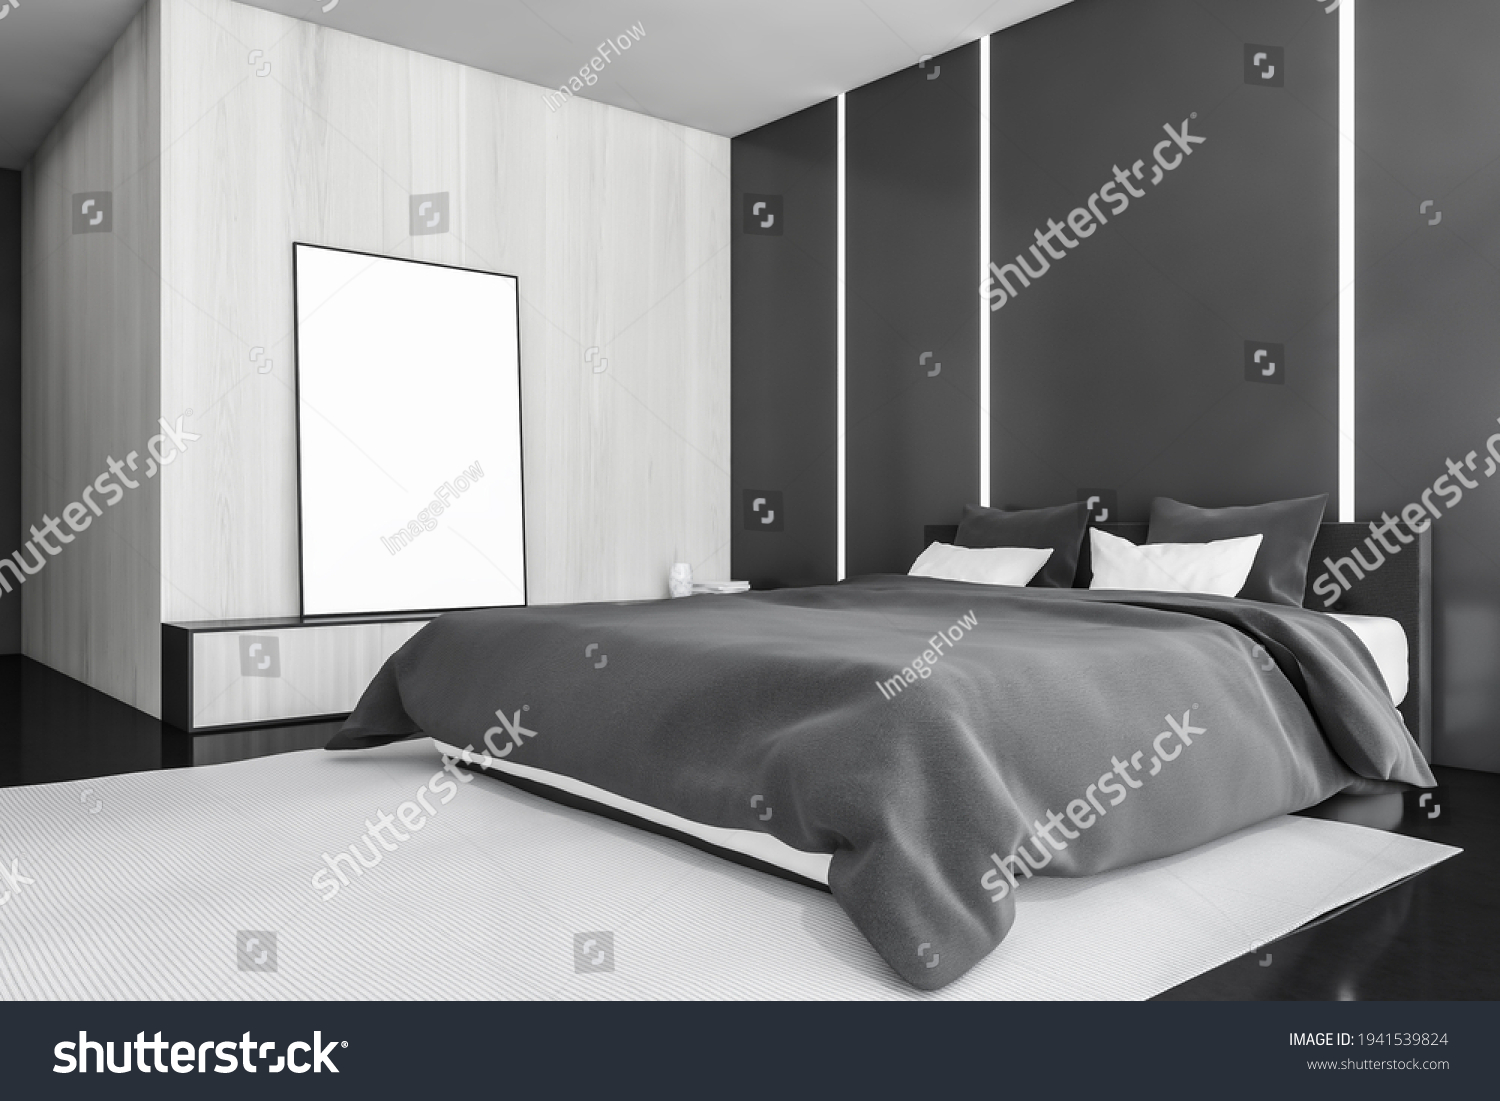 寝室 おしゃれ のイラスト素材 画像 ベクター画像 Shutterstock